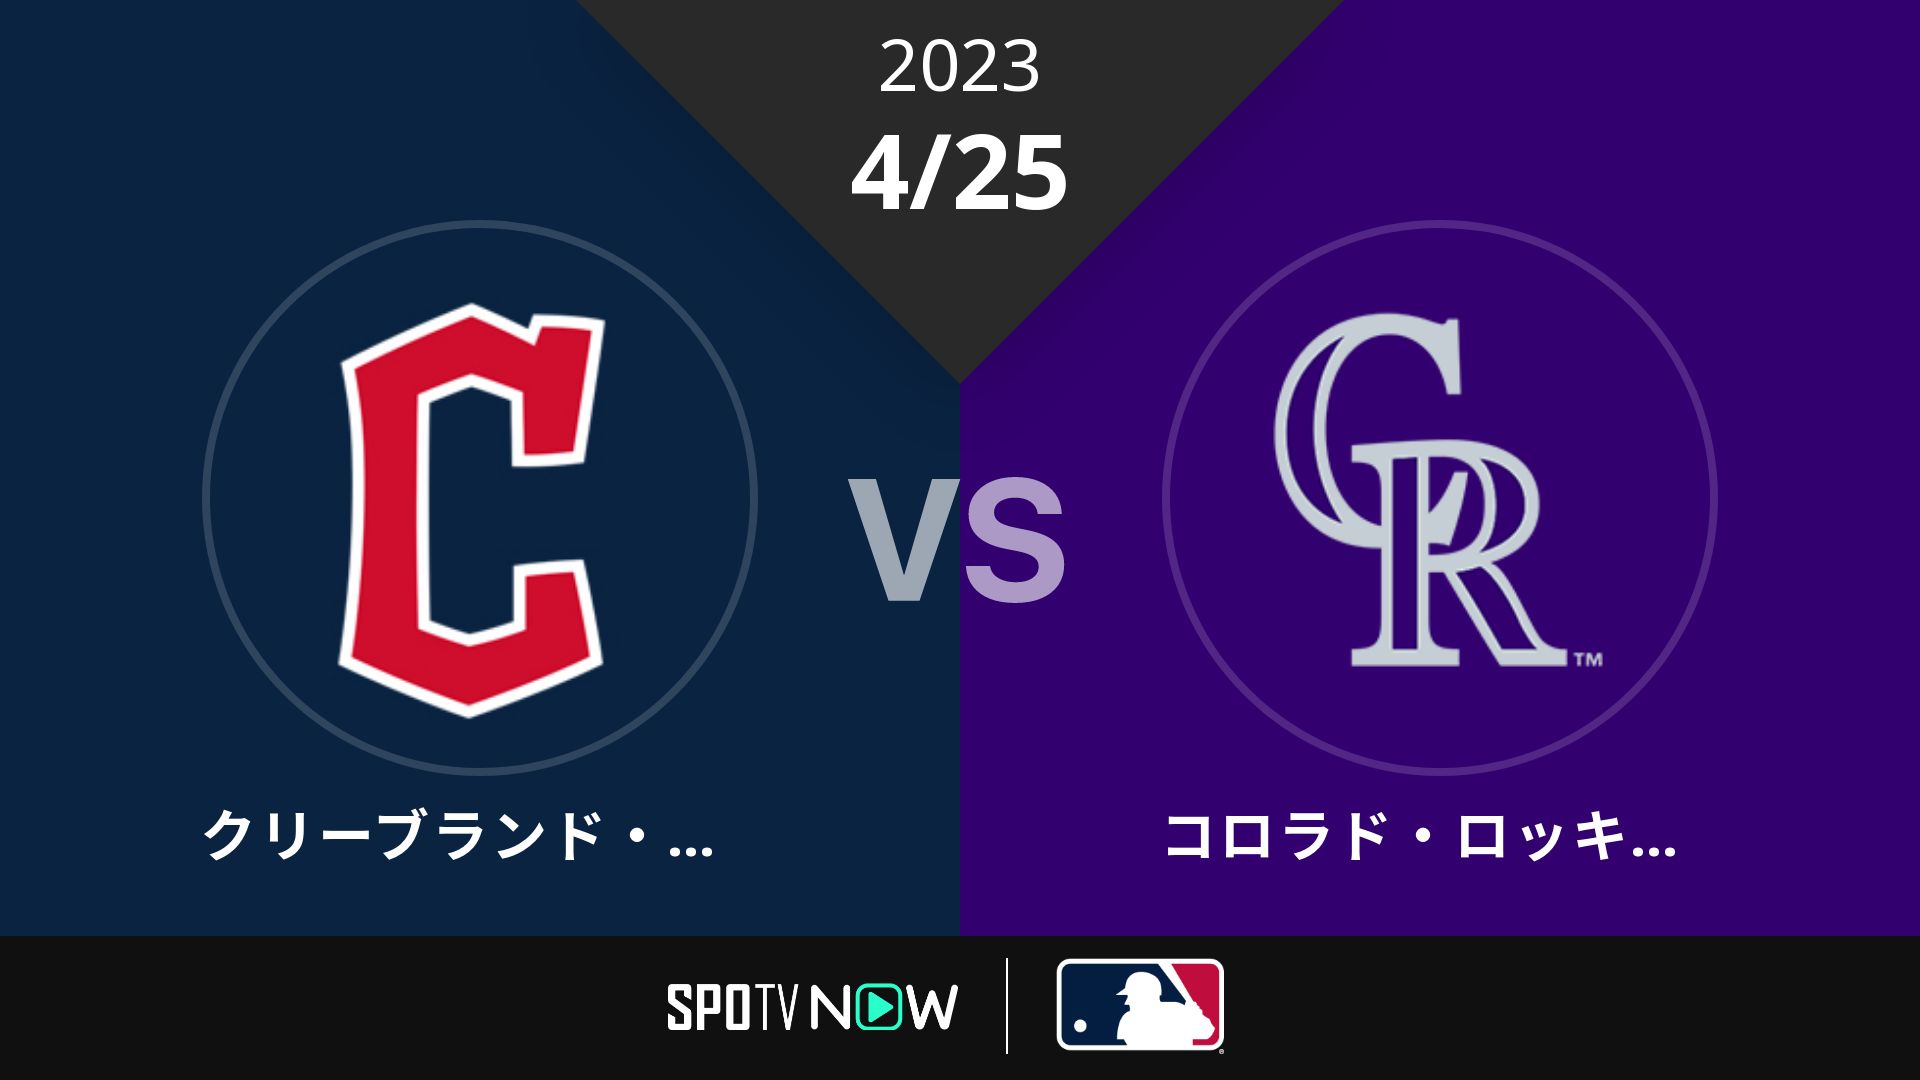 2023/4/25 ガーディアンズ vs ロッキーズ [MLB]